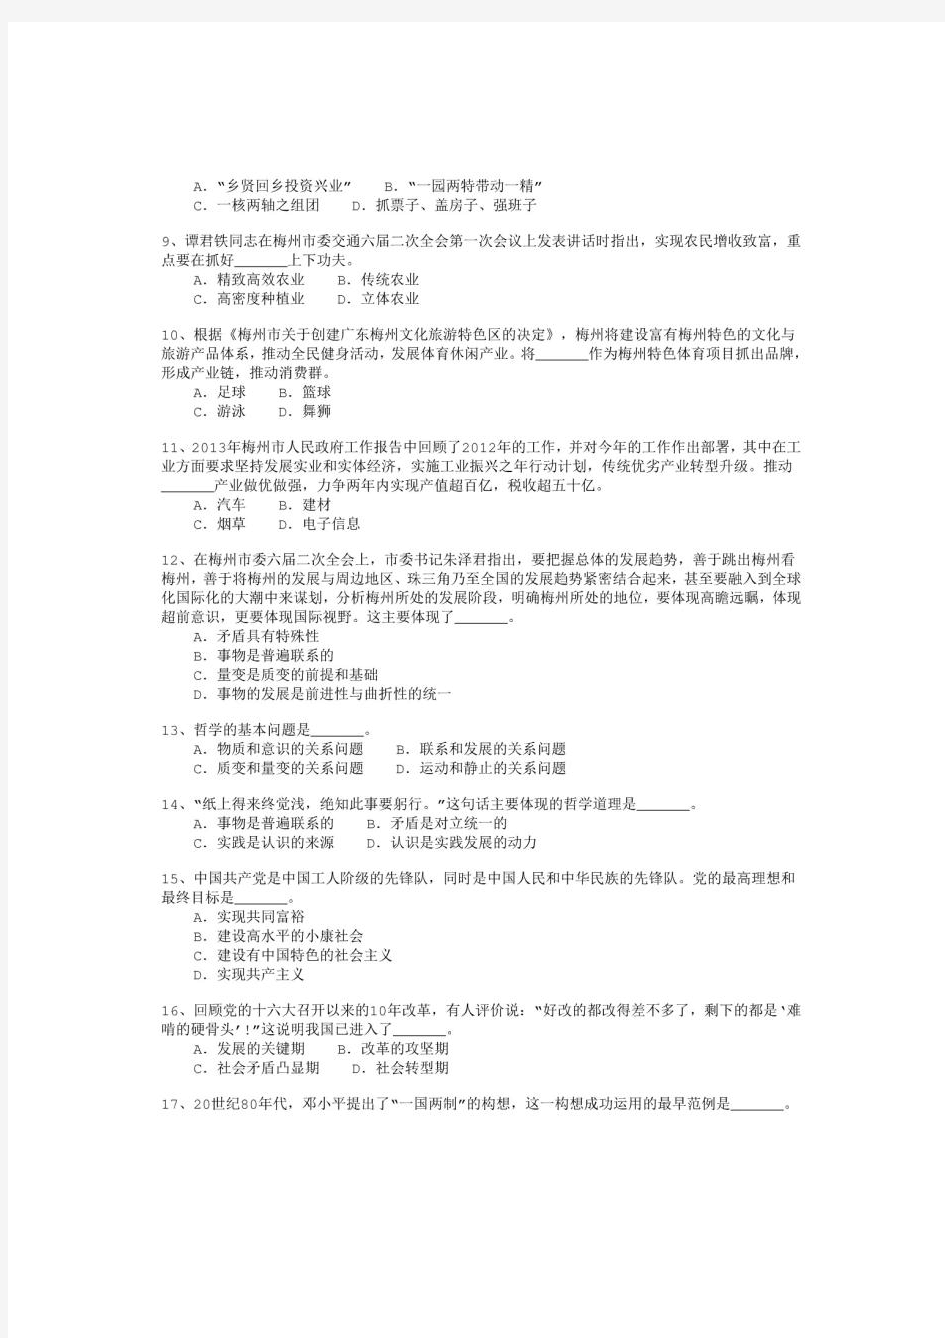 2013年广东省梅州市事业单位公开招聘工作人员考试《公共基础知识》真题及详解-b